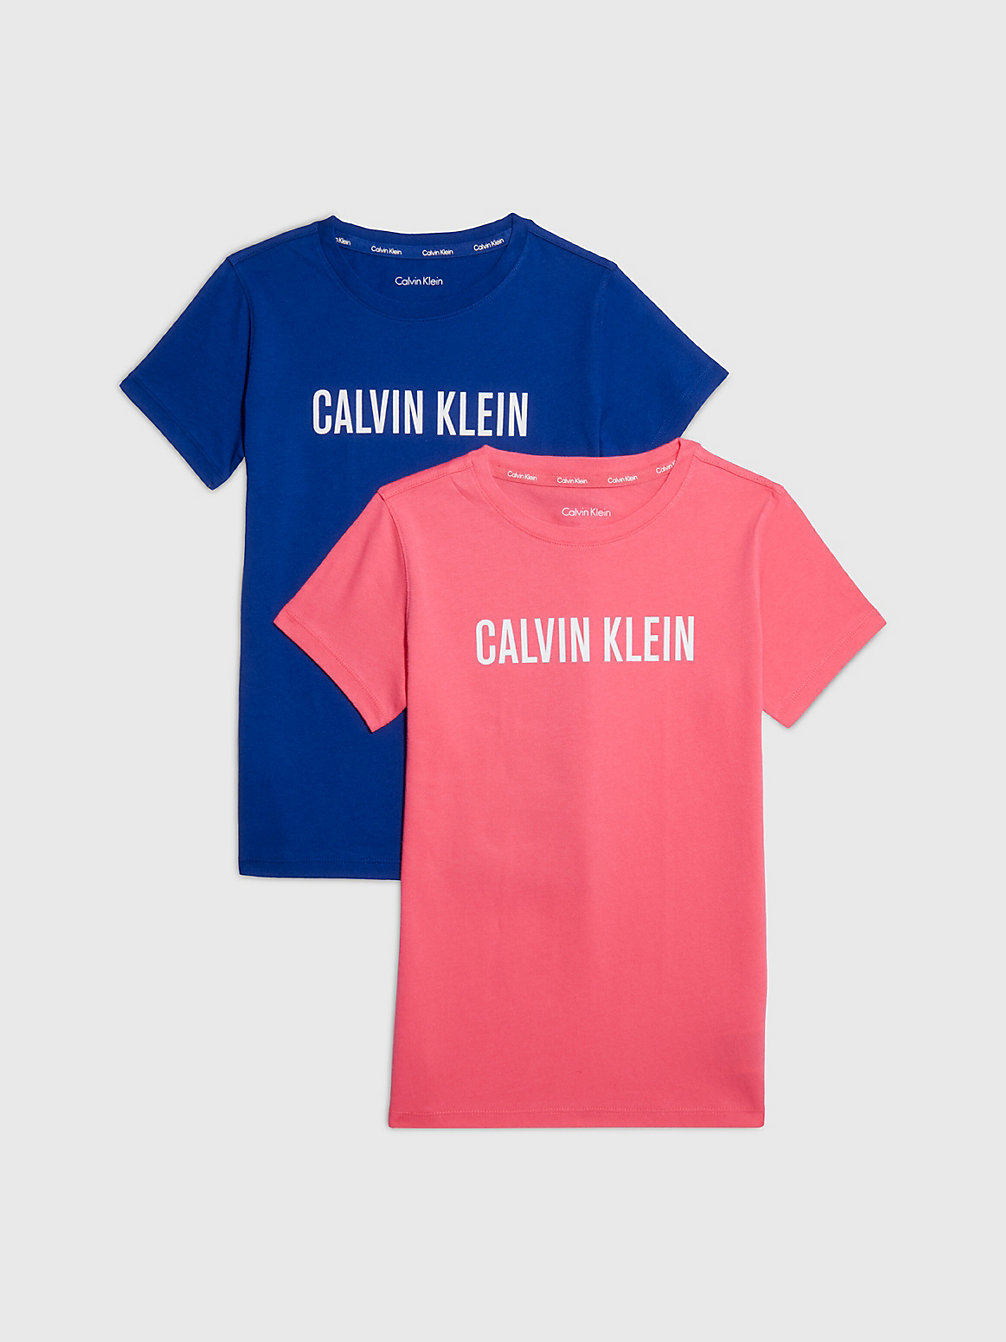 PINKFLASH/BOLDBLUE Lot De 2 T-Shirts - Intense Power undefined filles Calvin Klein